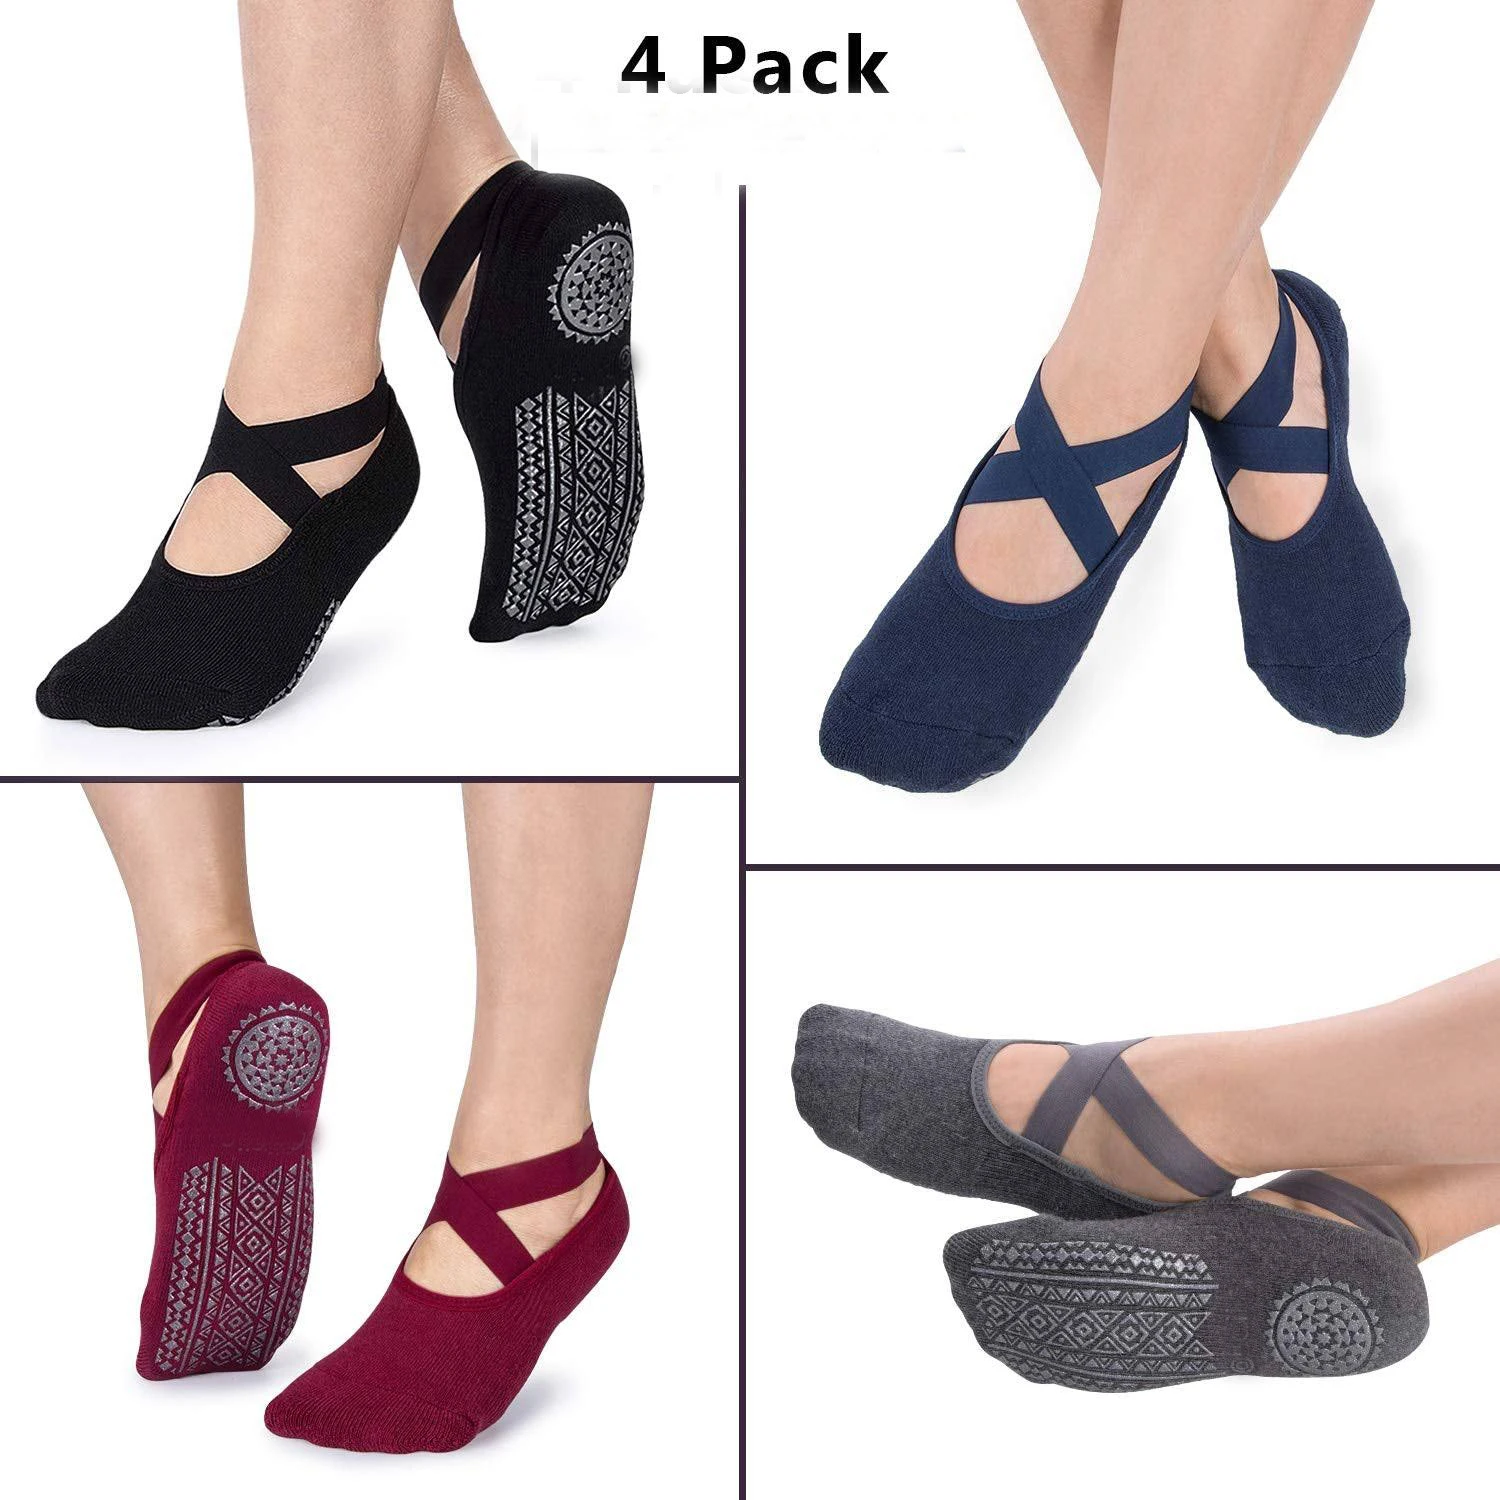 

for Socks Grips Women Yoga Non-Slip Bandage Cotton Sock Ideal Five Toe Socks for Pilates Pure Ballet Dance Barefoot Workout